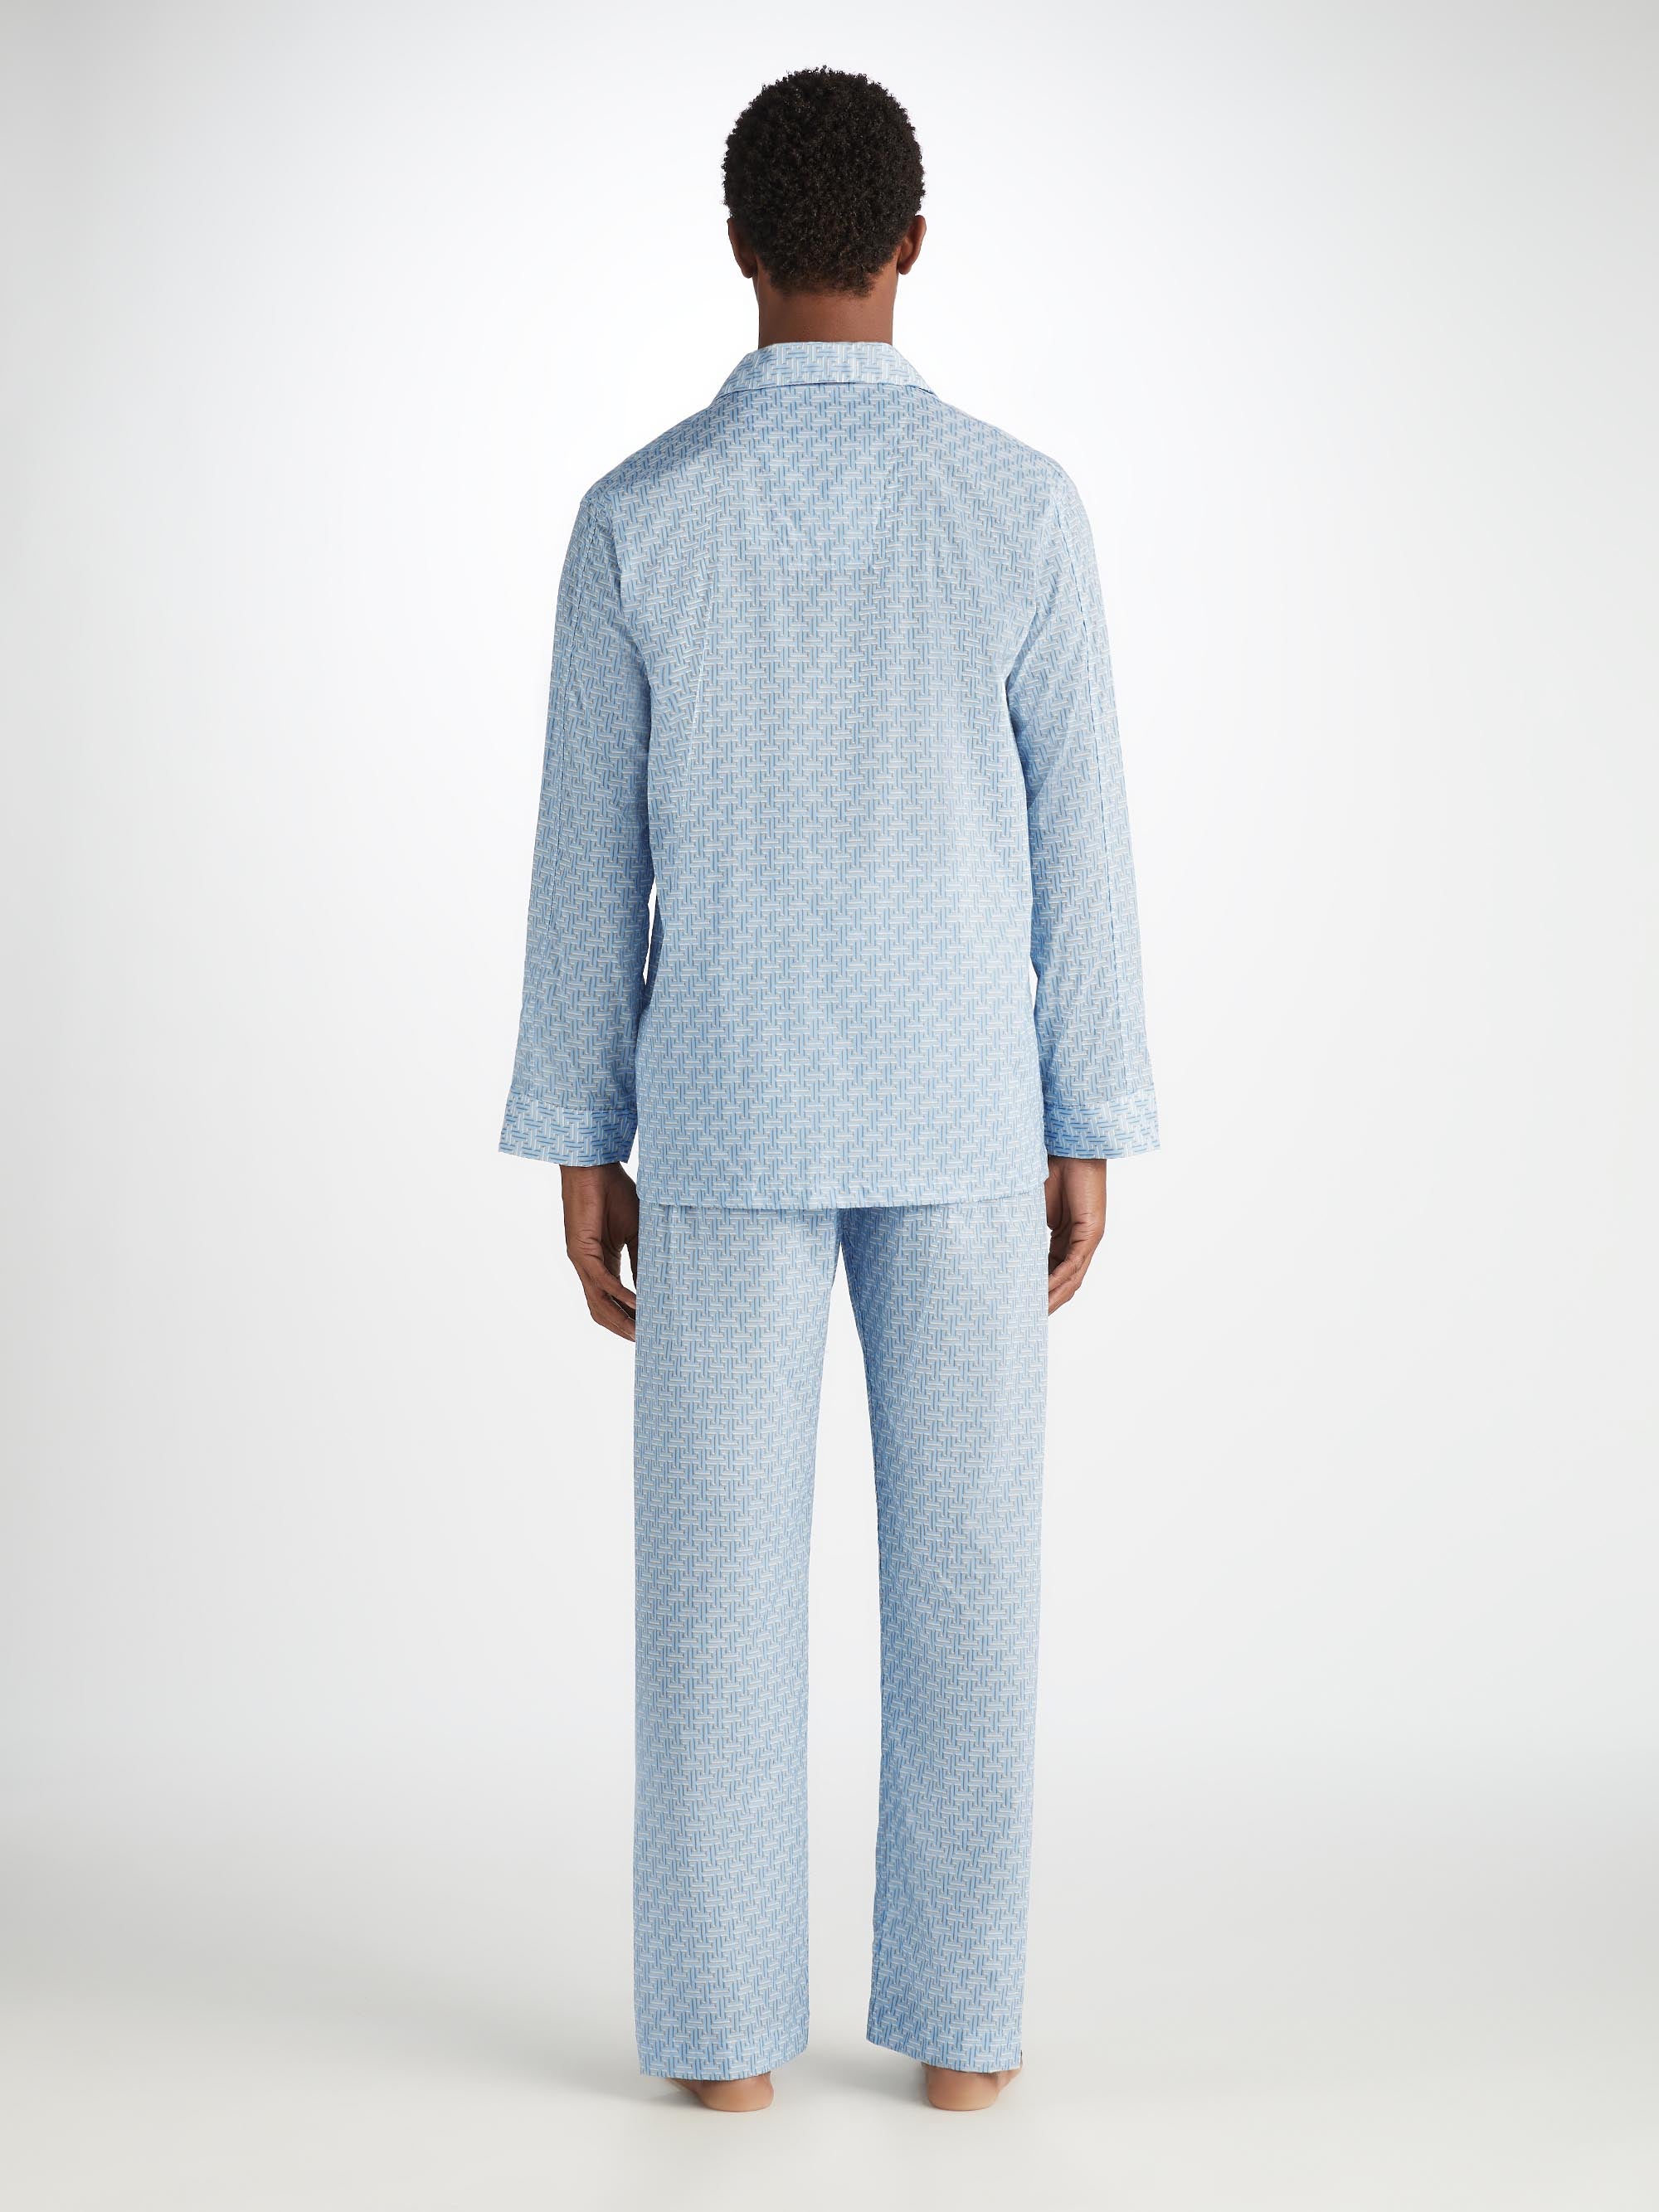 Men's Classic Fit Pyjamas Ledbury 72 Cotton Batiste Blue